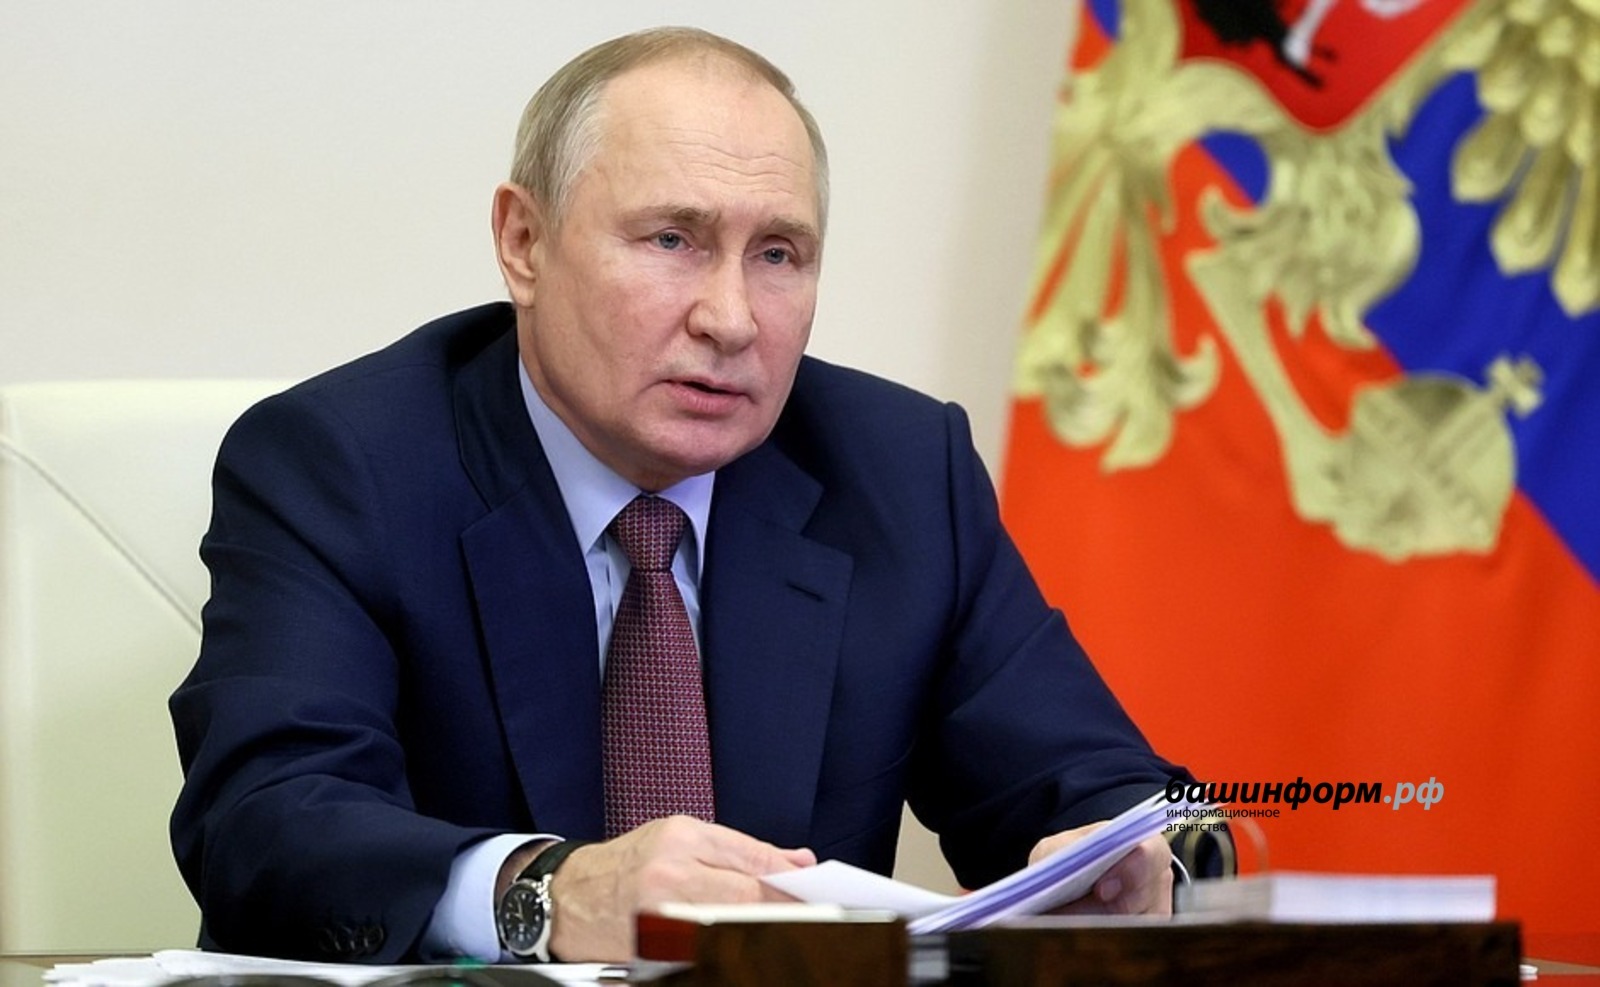 Владимир Путин сообщил, что  в Уфе стартовал проект строительства межвузовского кампуса